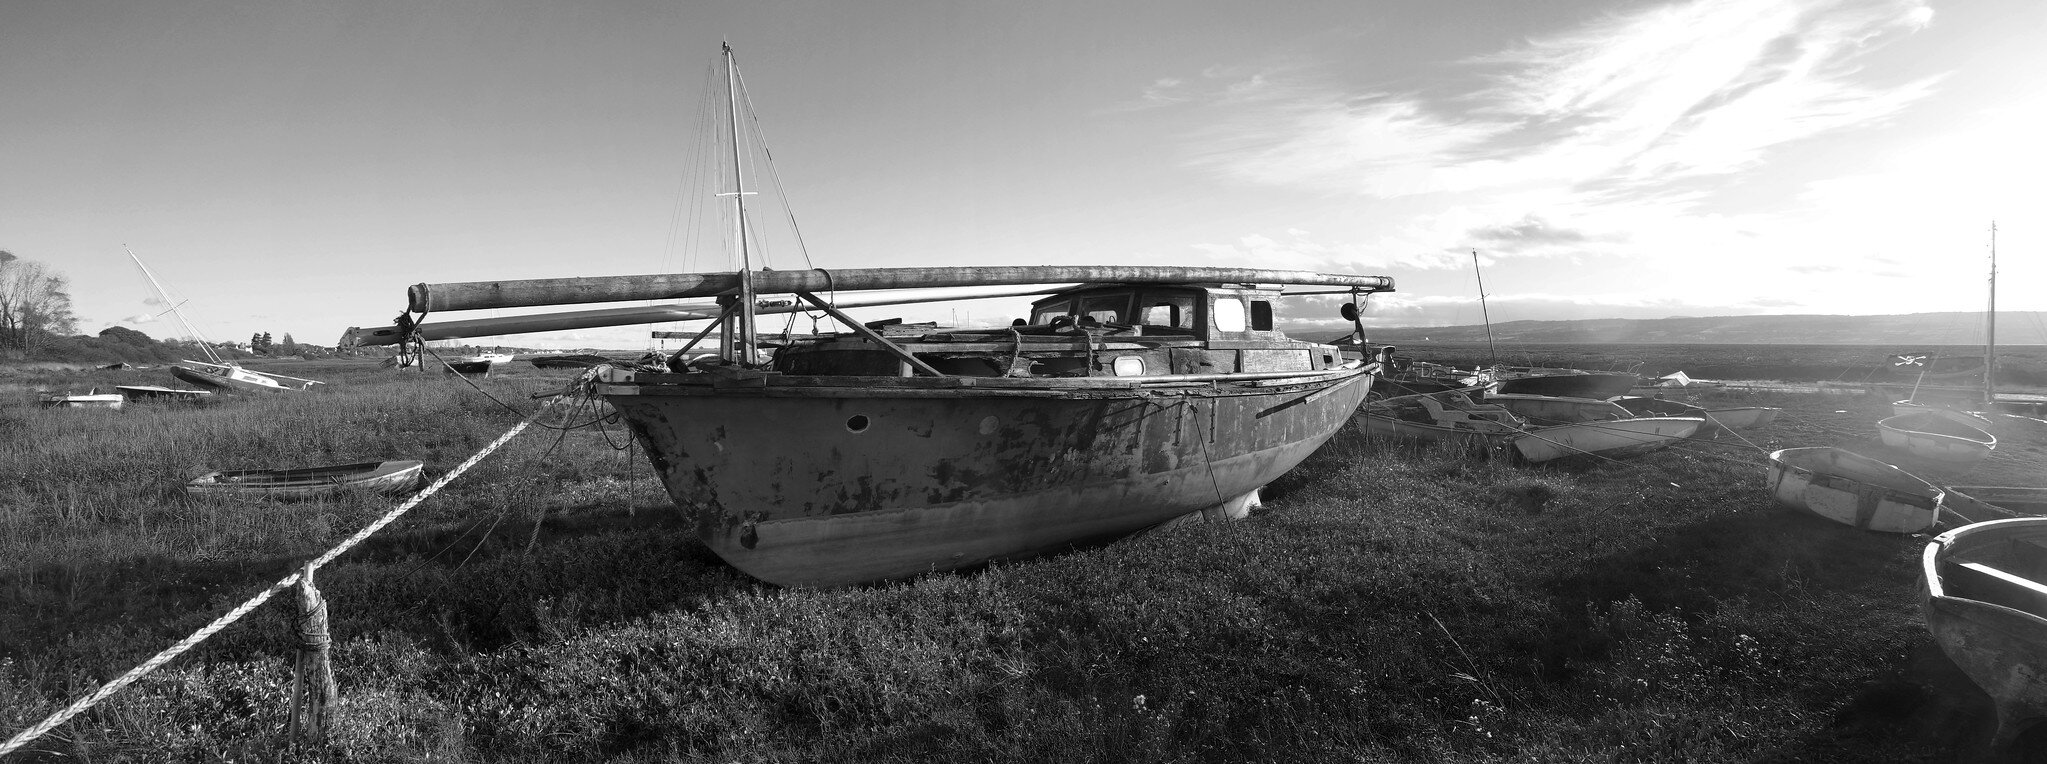 Old timer moored at Heswall Boatyard